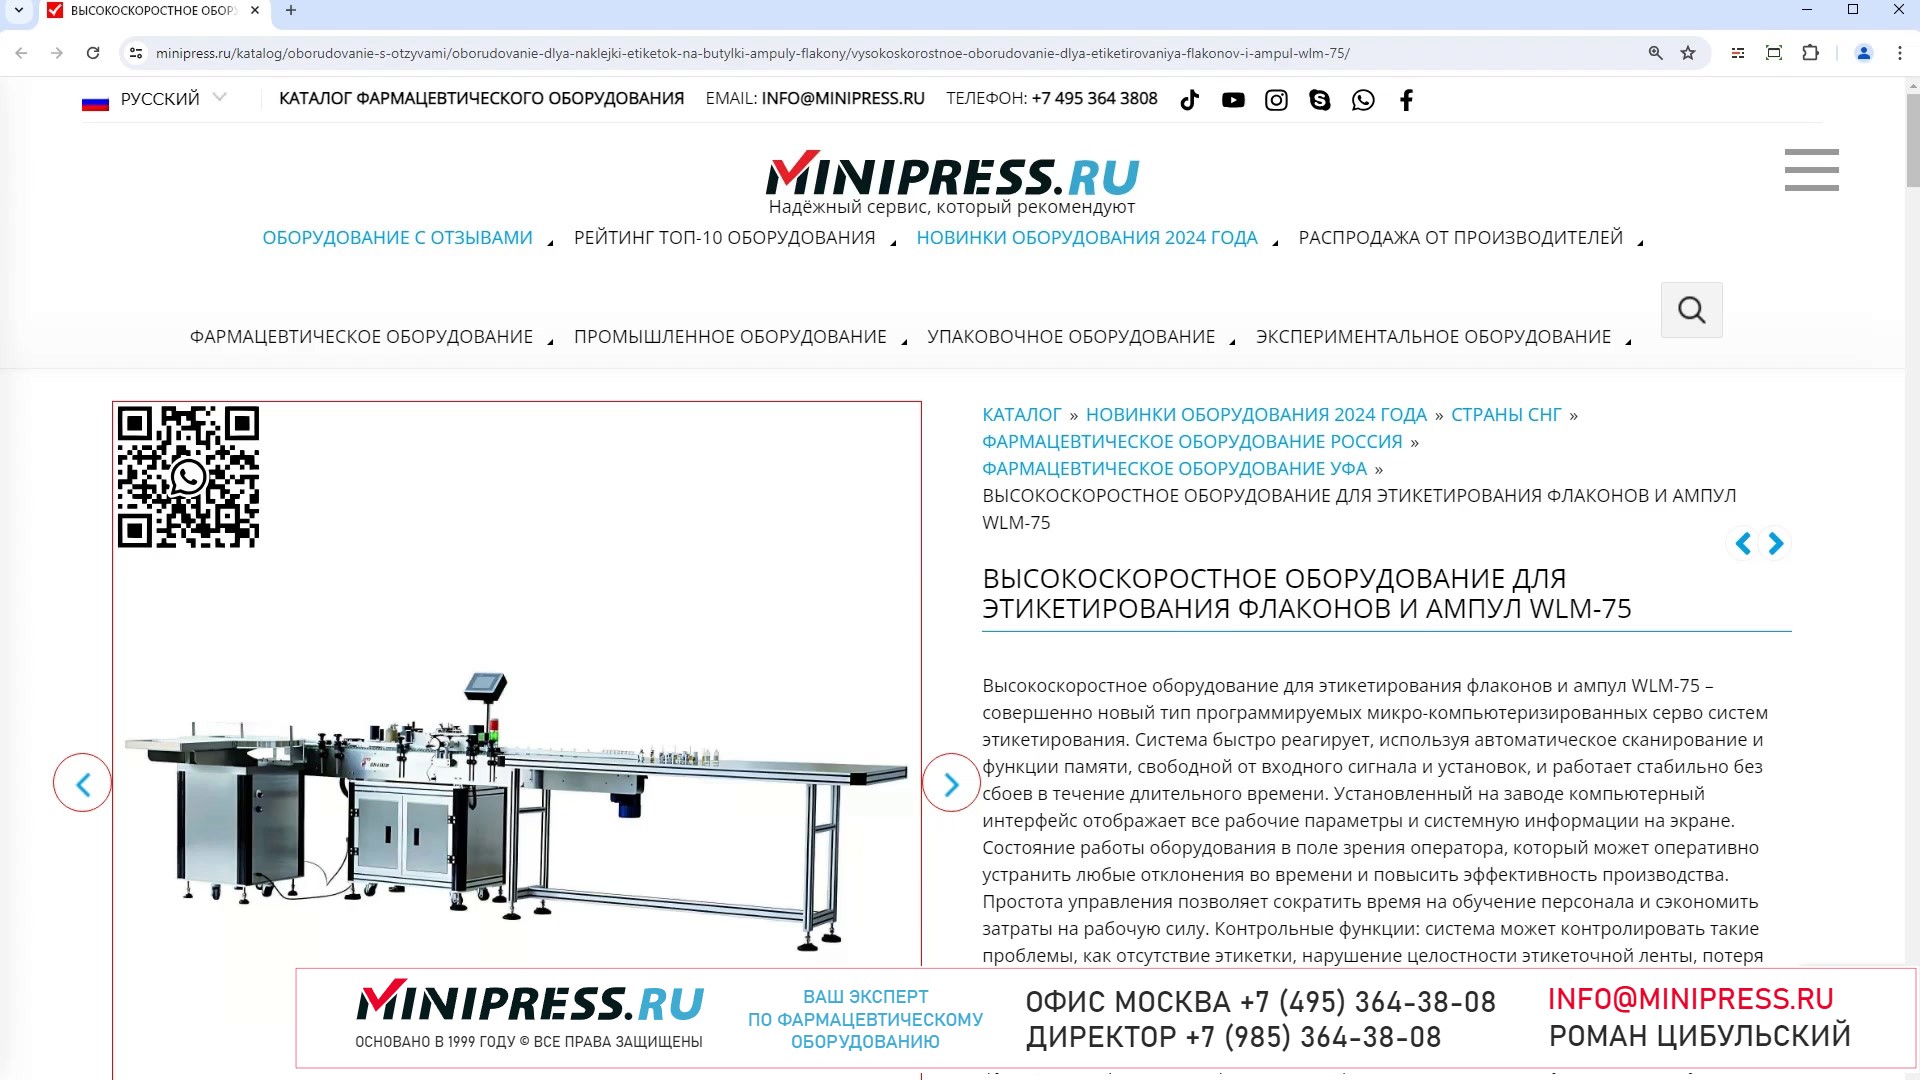 Minipress.ru Высокоскоростное оборудование для этикетирования флаконов и ампул WLM-75